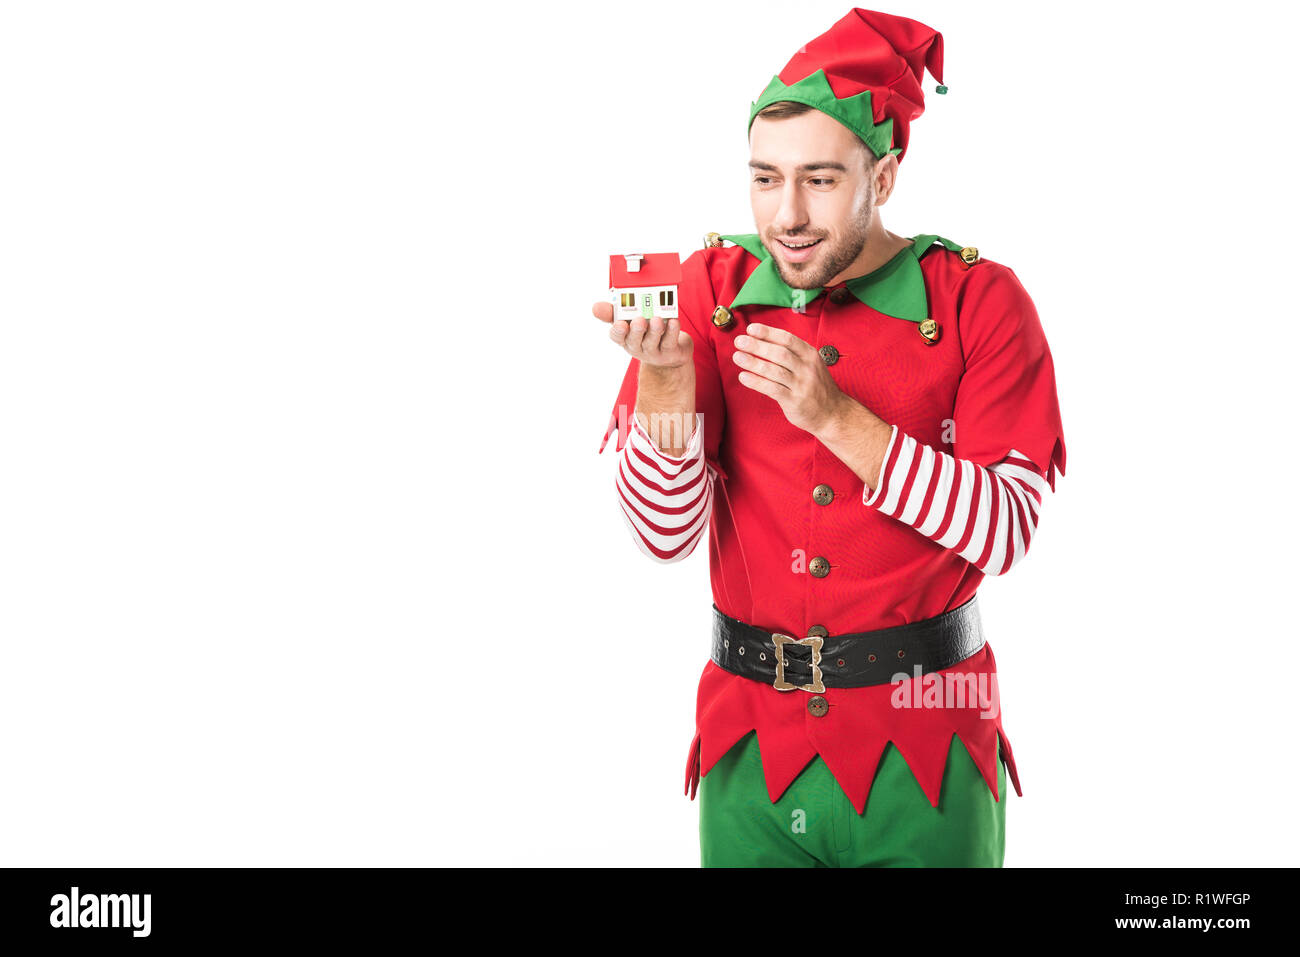 Glückliche Menschen in Weihnachtself kostüm Holding Haus Modell auf  weissem, Immobilien Verkauf und Versicherung Konzept isoliert  Stockfotografie - Alamy